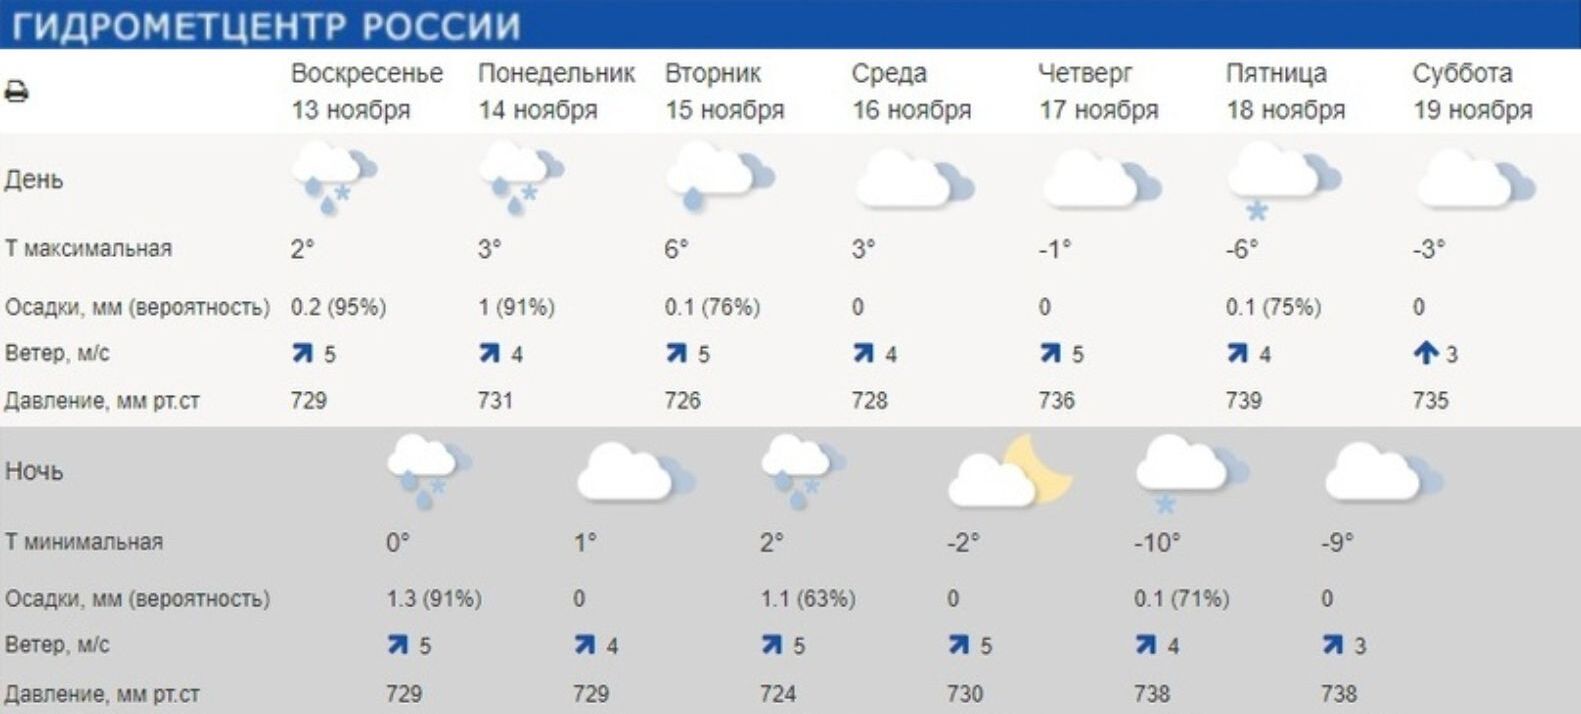 Погода сегодня в красноярске сейчас по часам